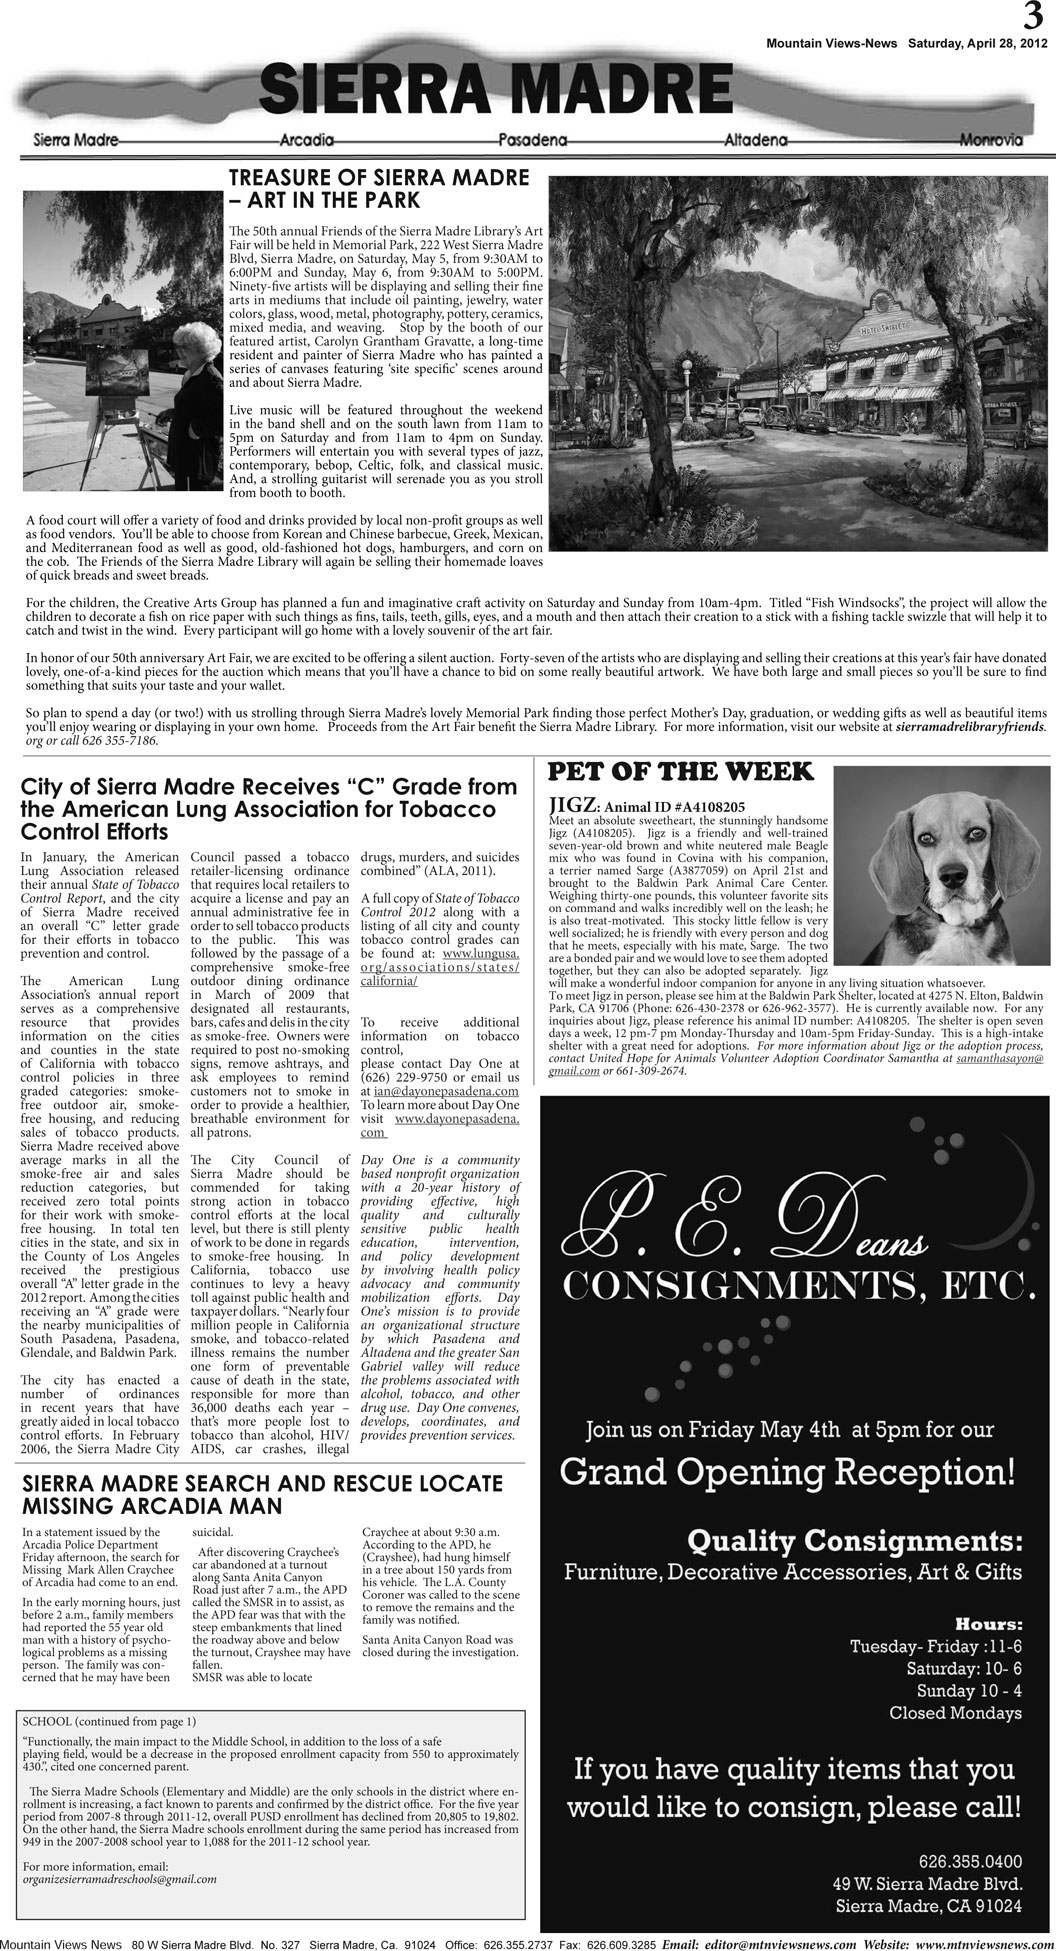 MVNews this week:  Page 3